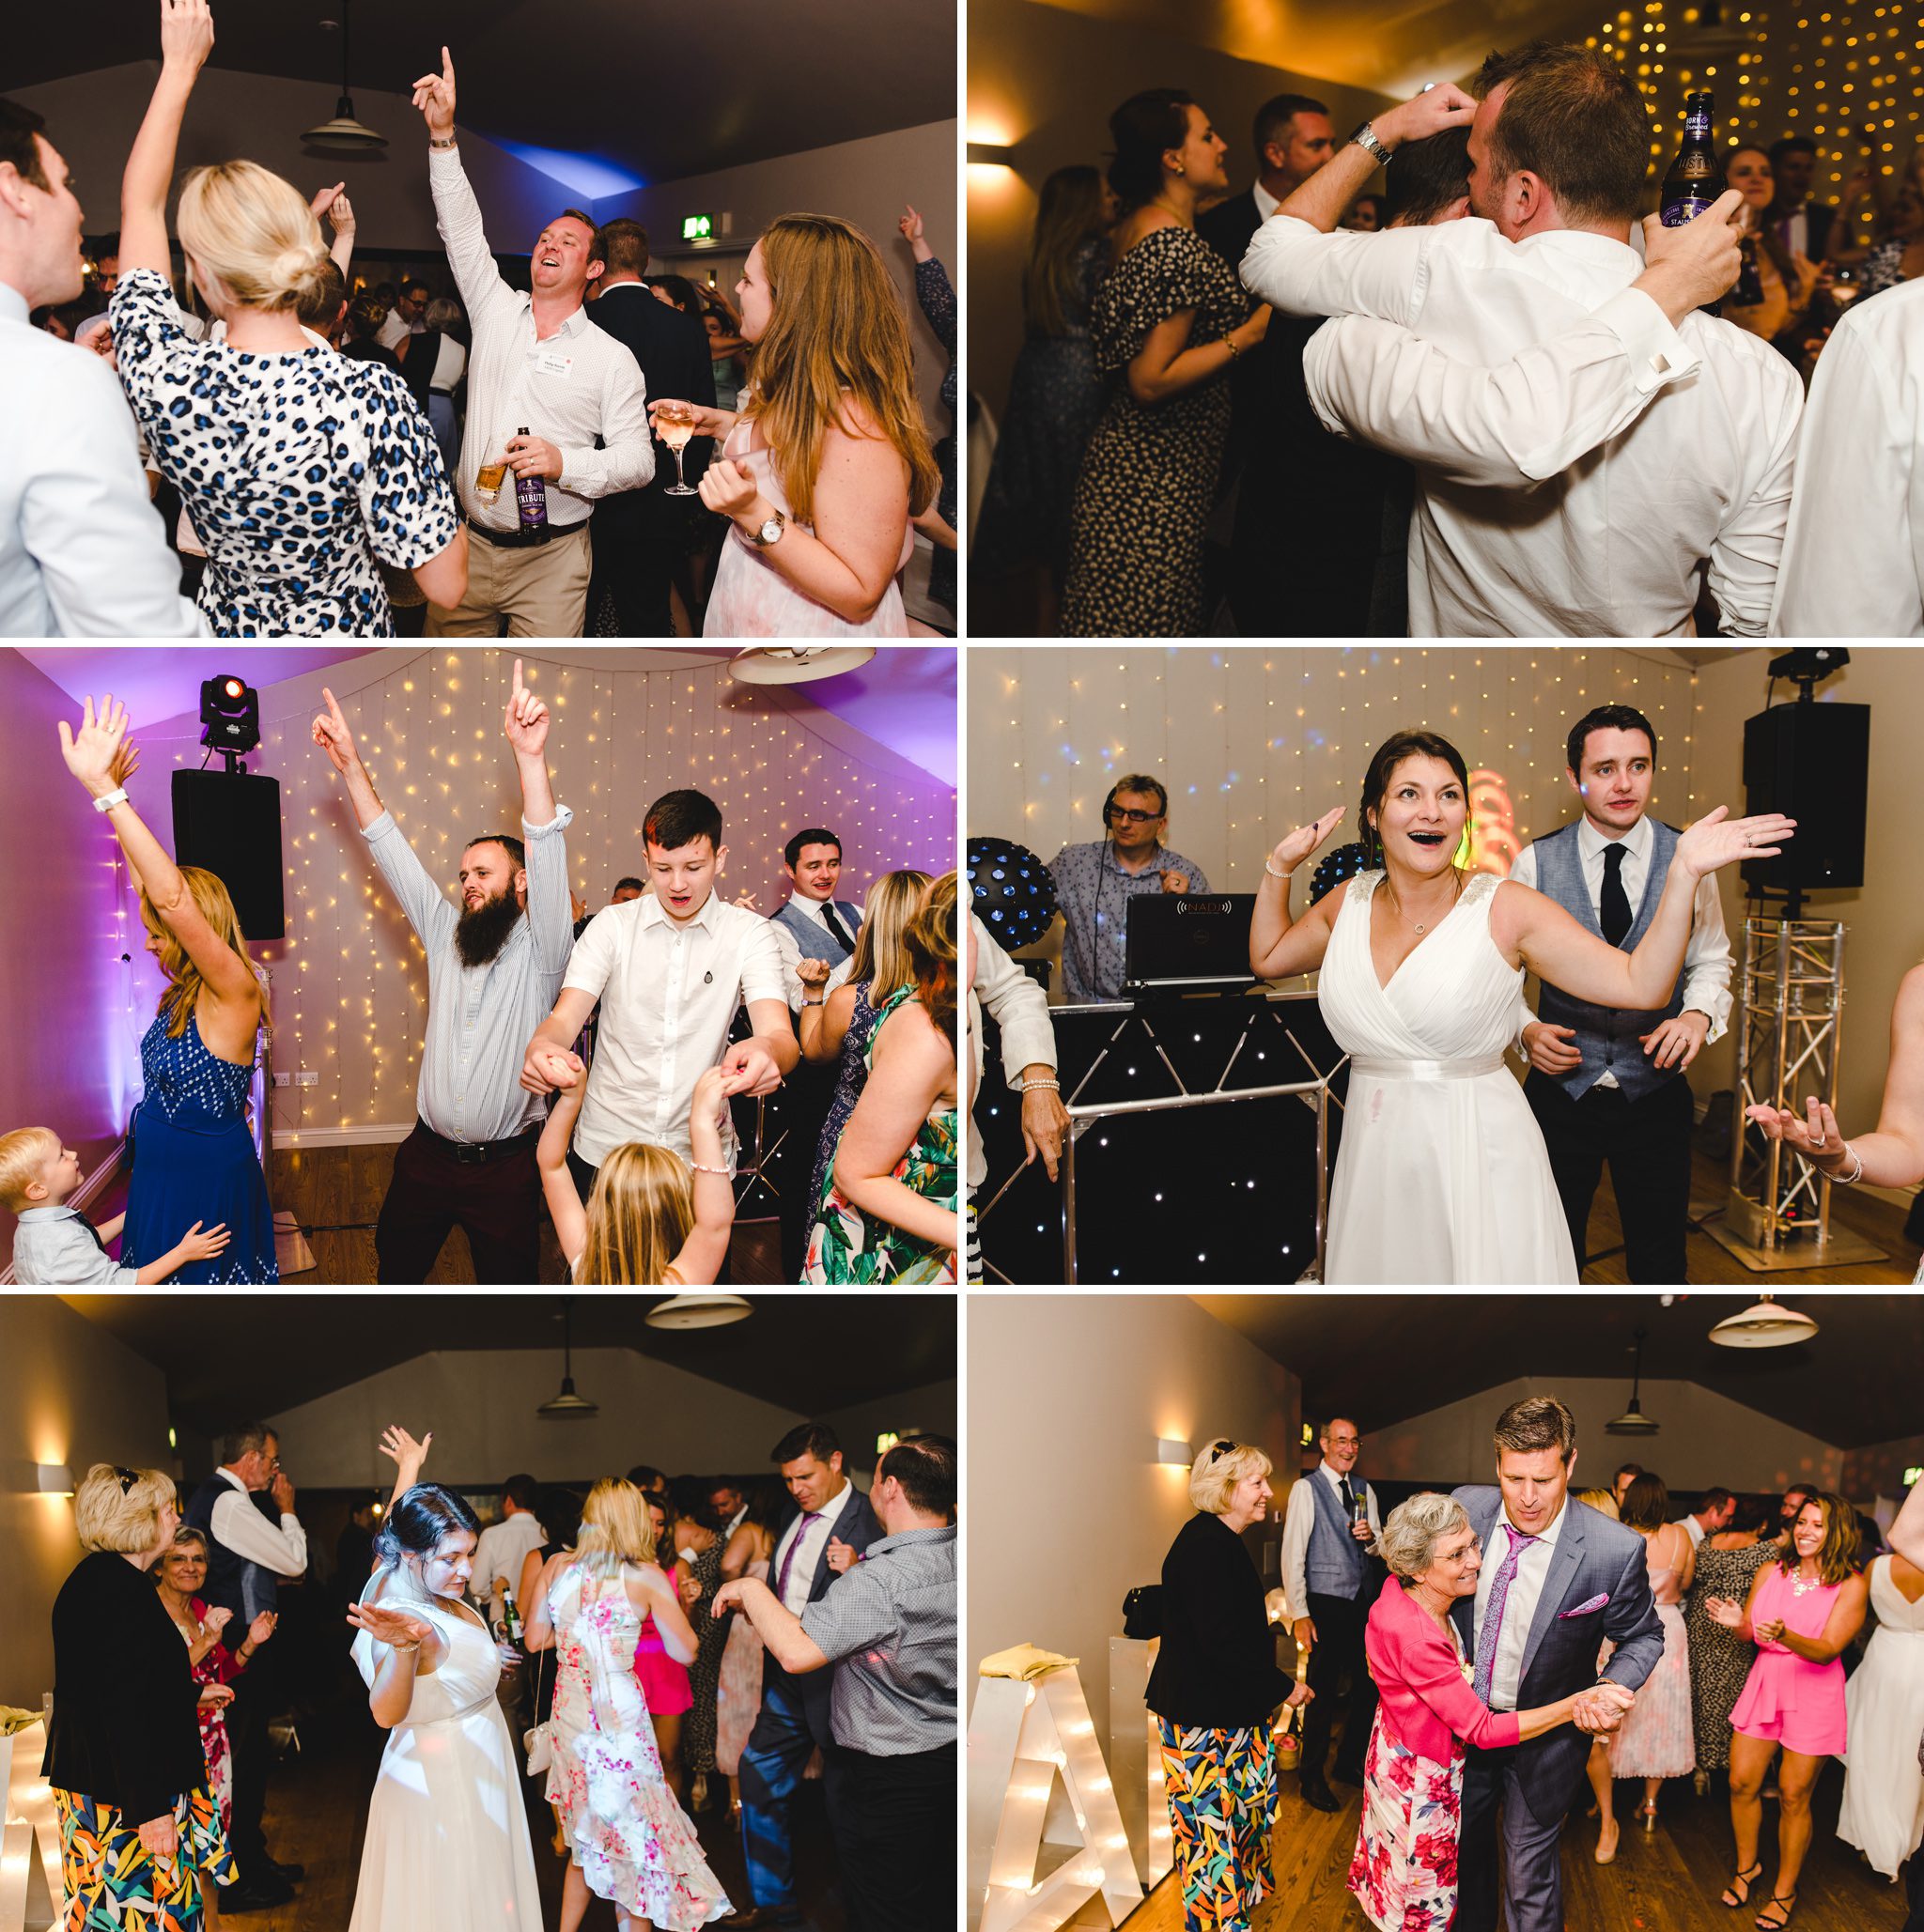 Guests dancing at an Upcote Barn wedding